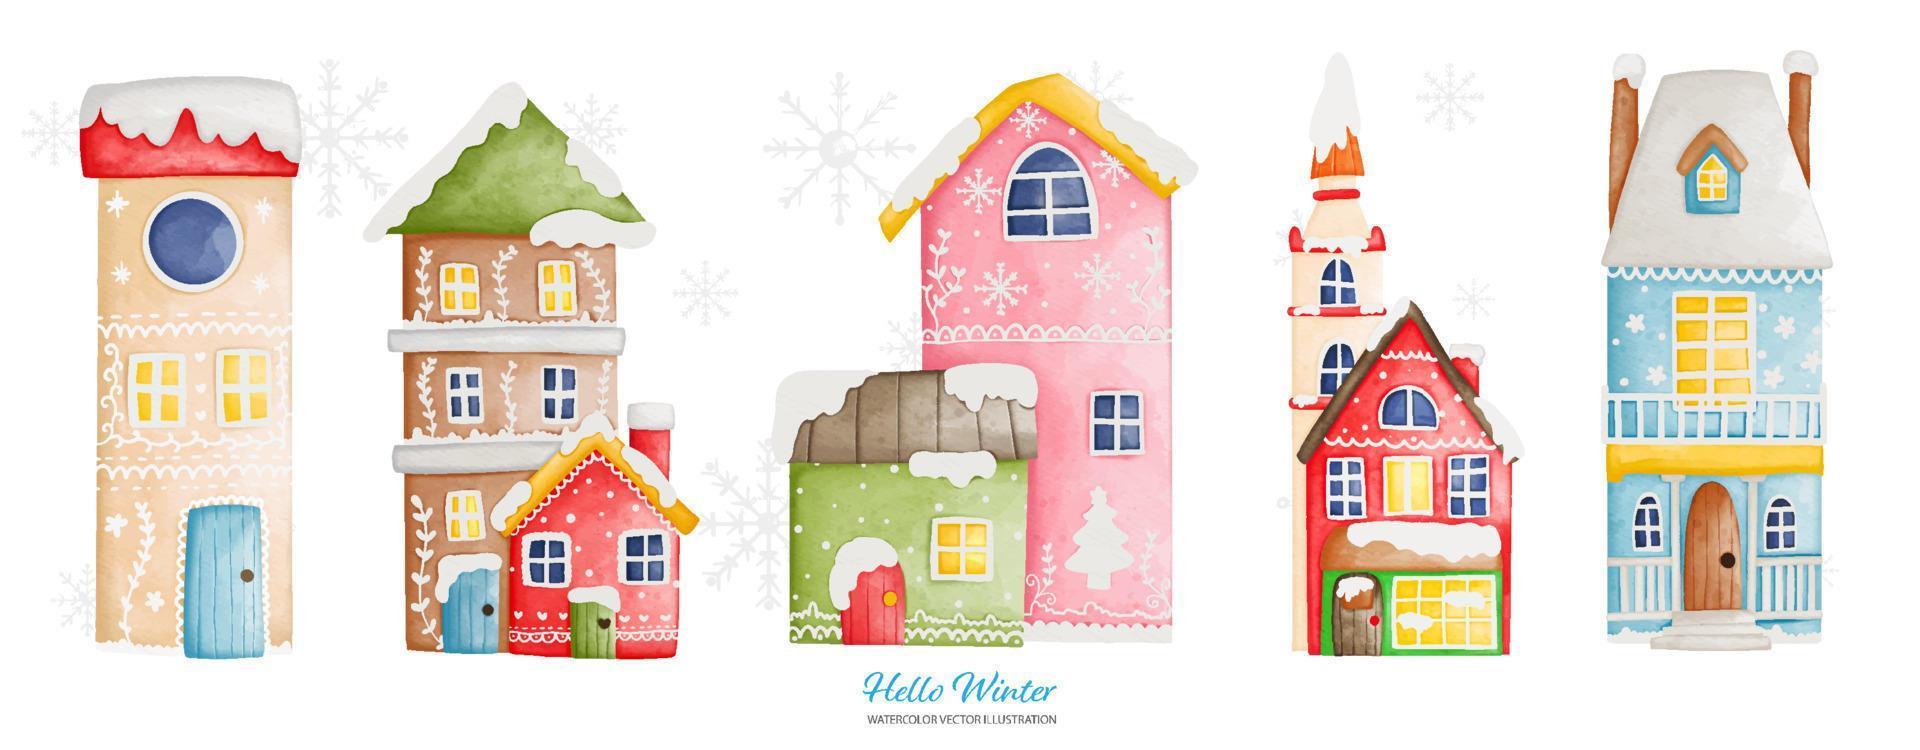 wijnoogst winter huis in winter seizoen, waterverf vector illustratie